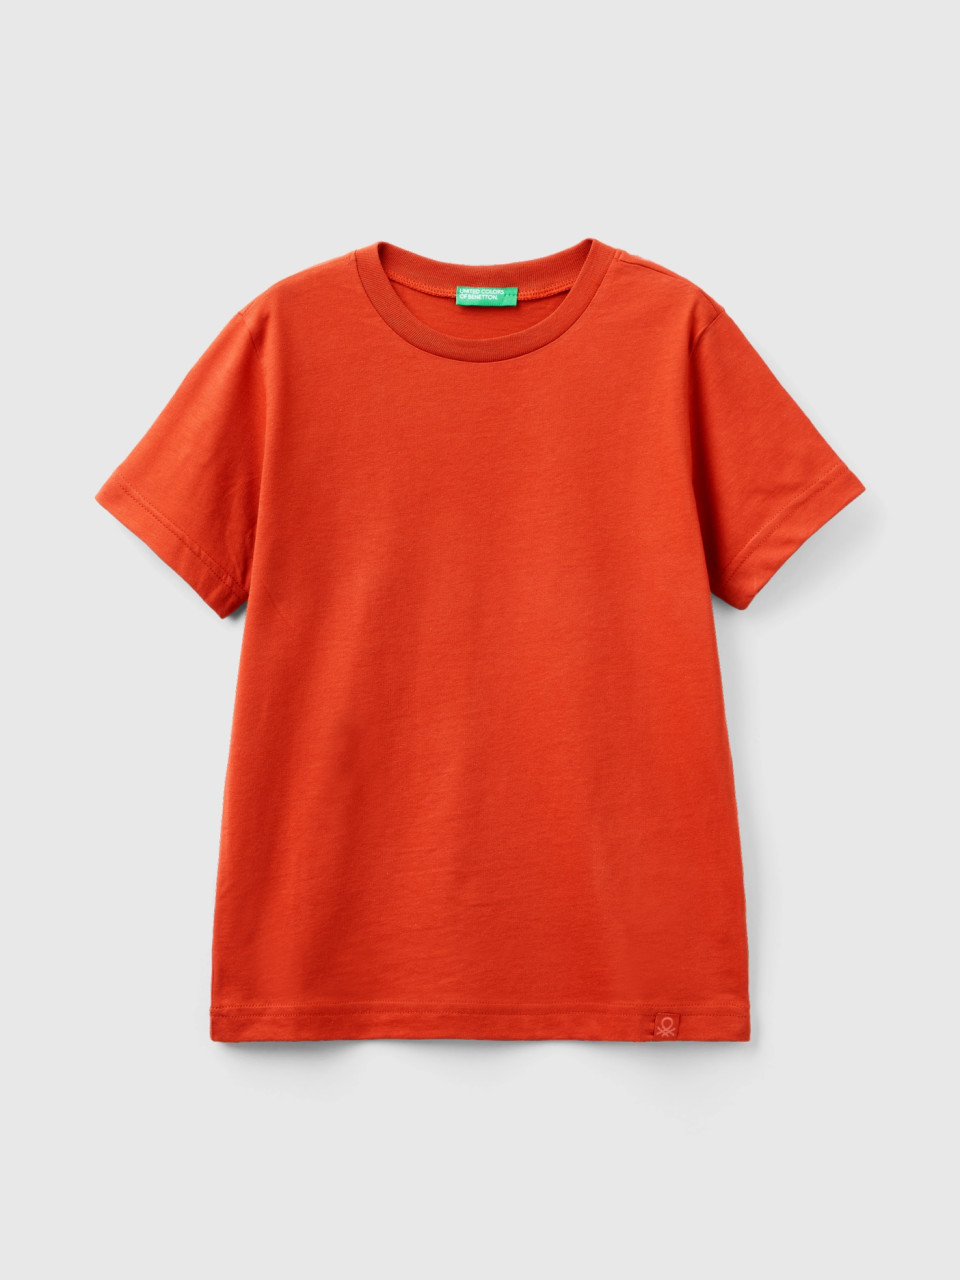 Benetton, Camiseta De Algodón Orgánico, Rojo Teja, Niños